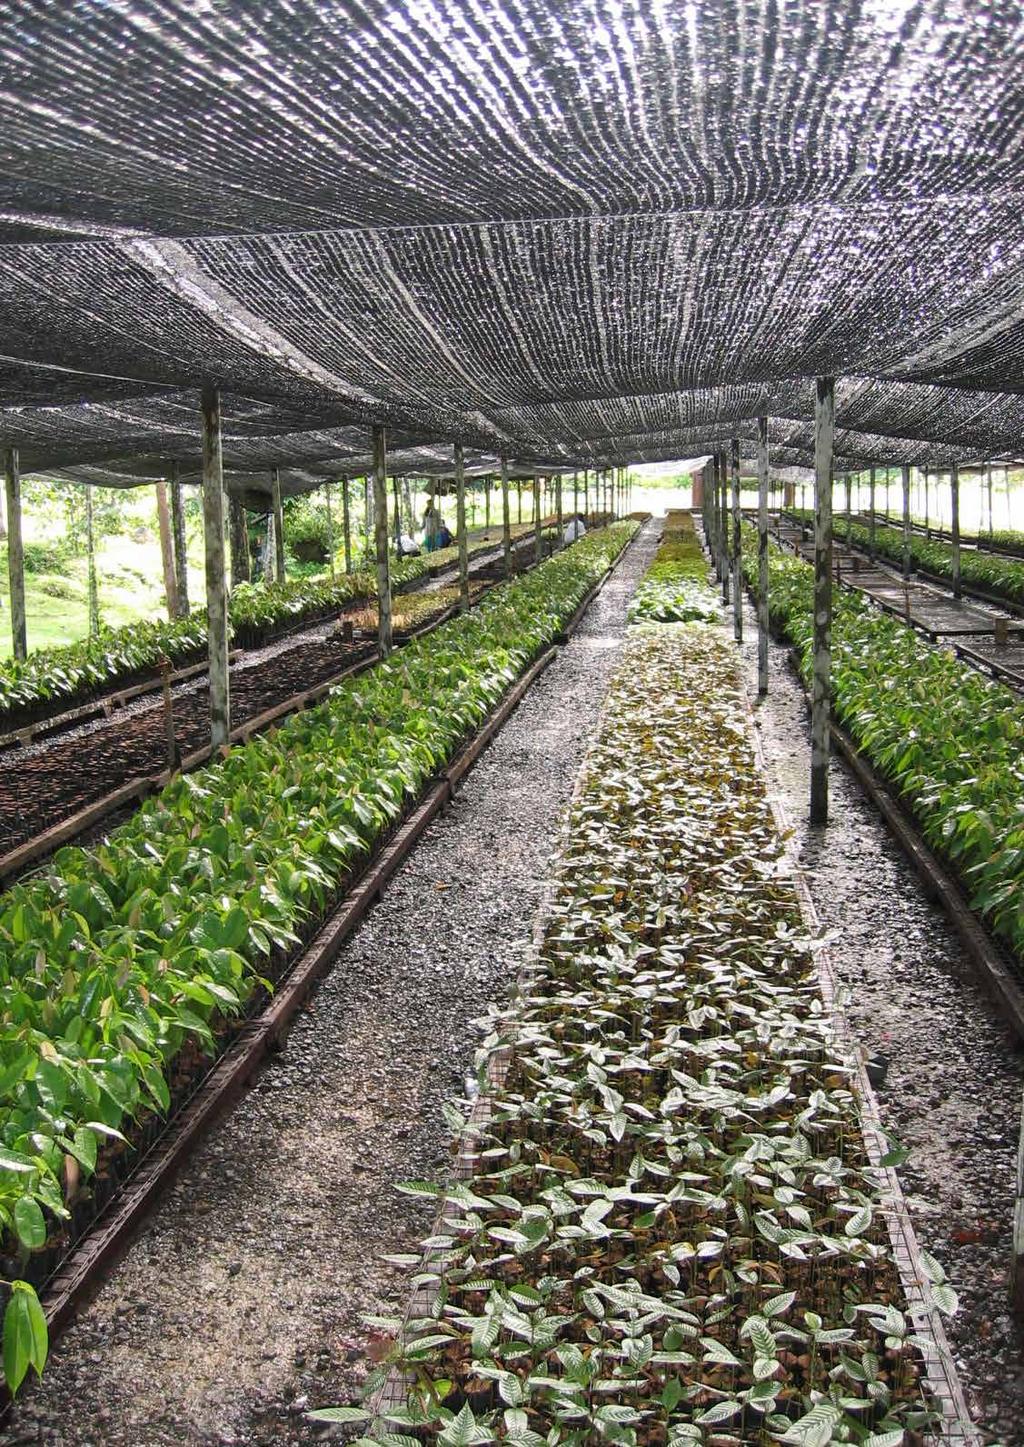 4.4 DE HOOGSTE BOOM TER WERELD IN MALEISIË In Maleisië is het niet meer mogelijk om bomen te planten of CO2-uitstoot te compenseren.